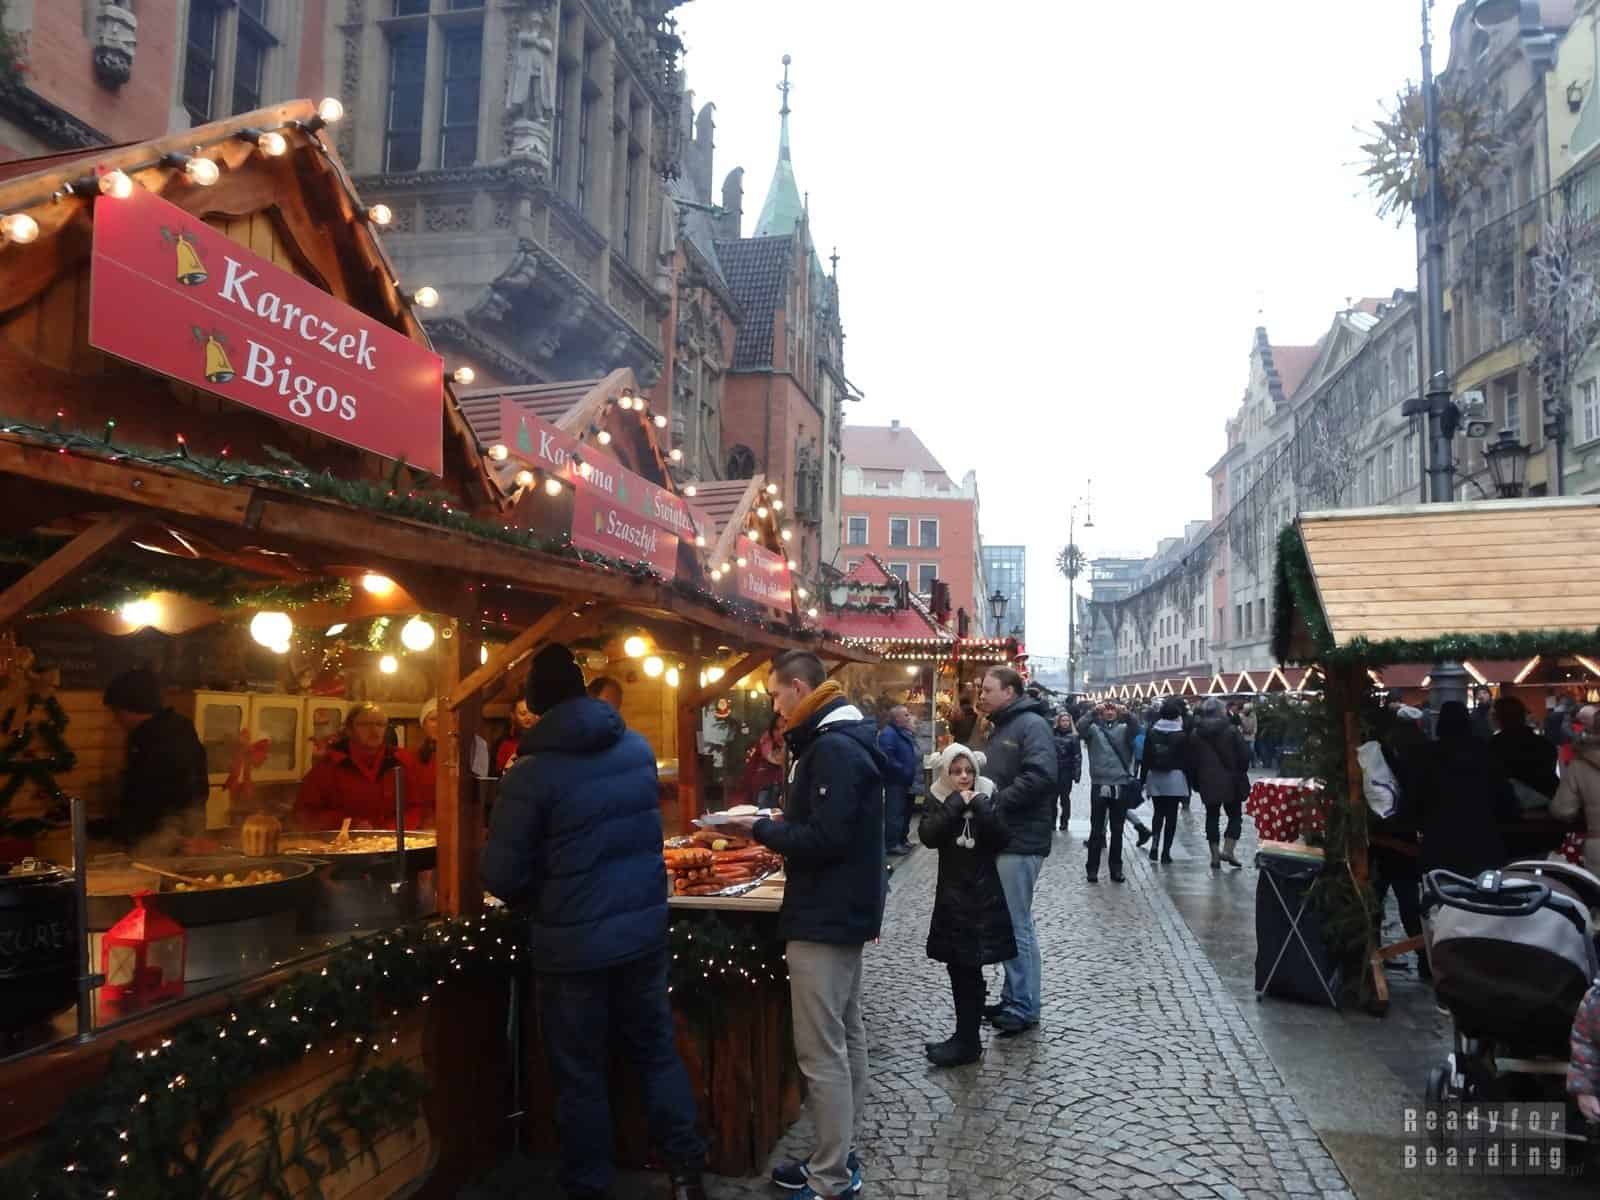 Wrocław - Christmas Market